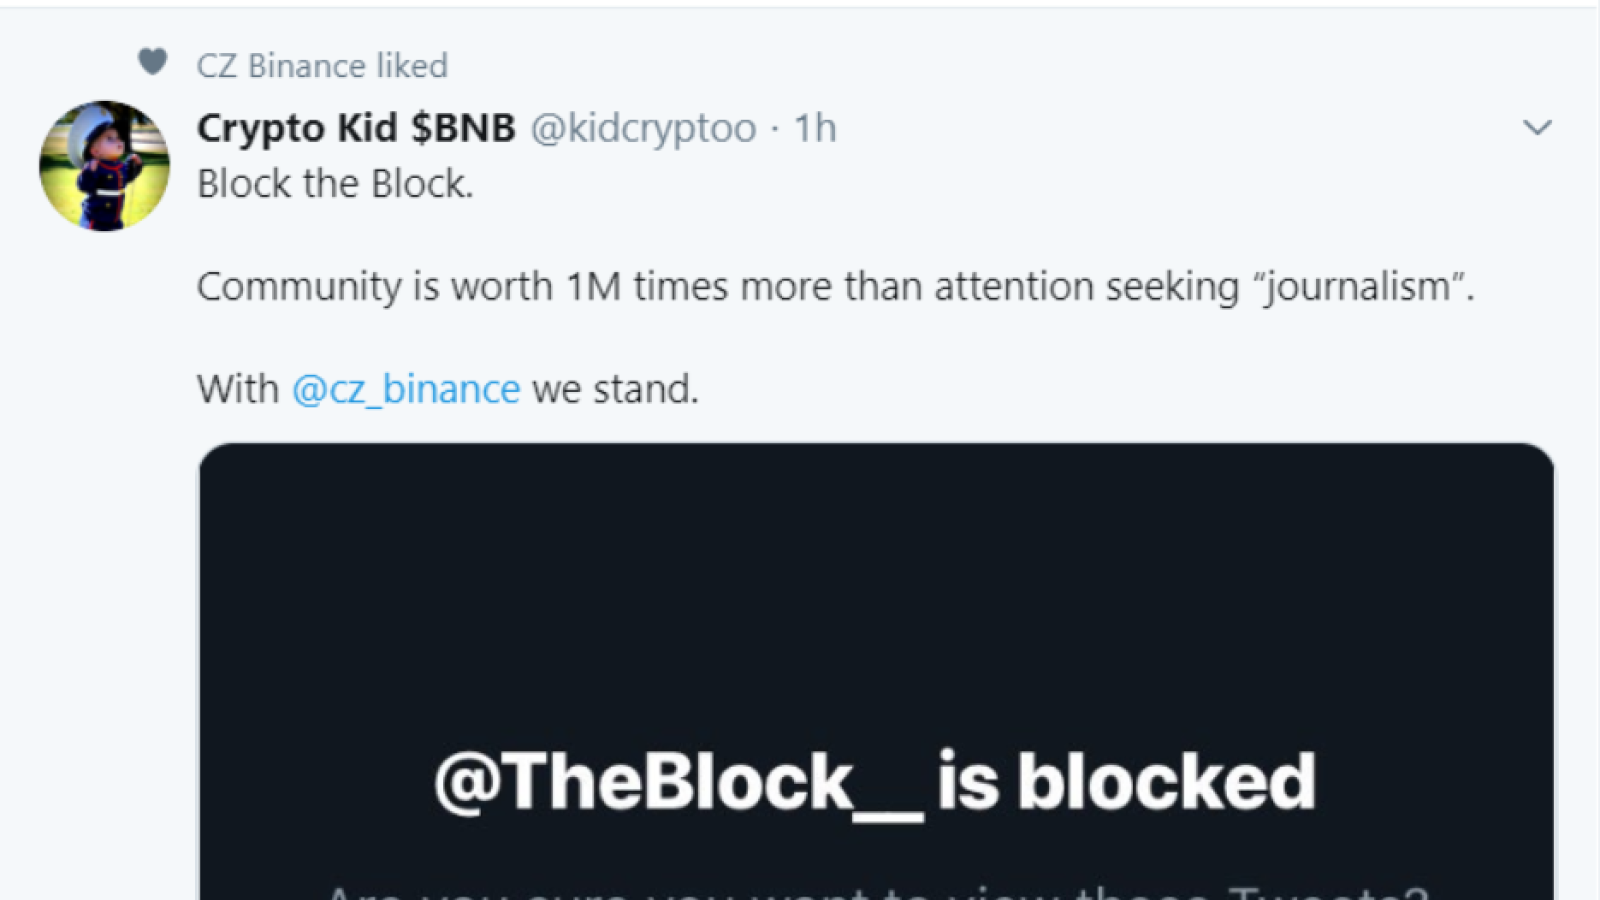 Block the Block